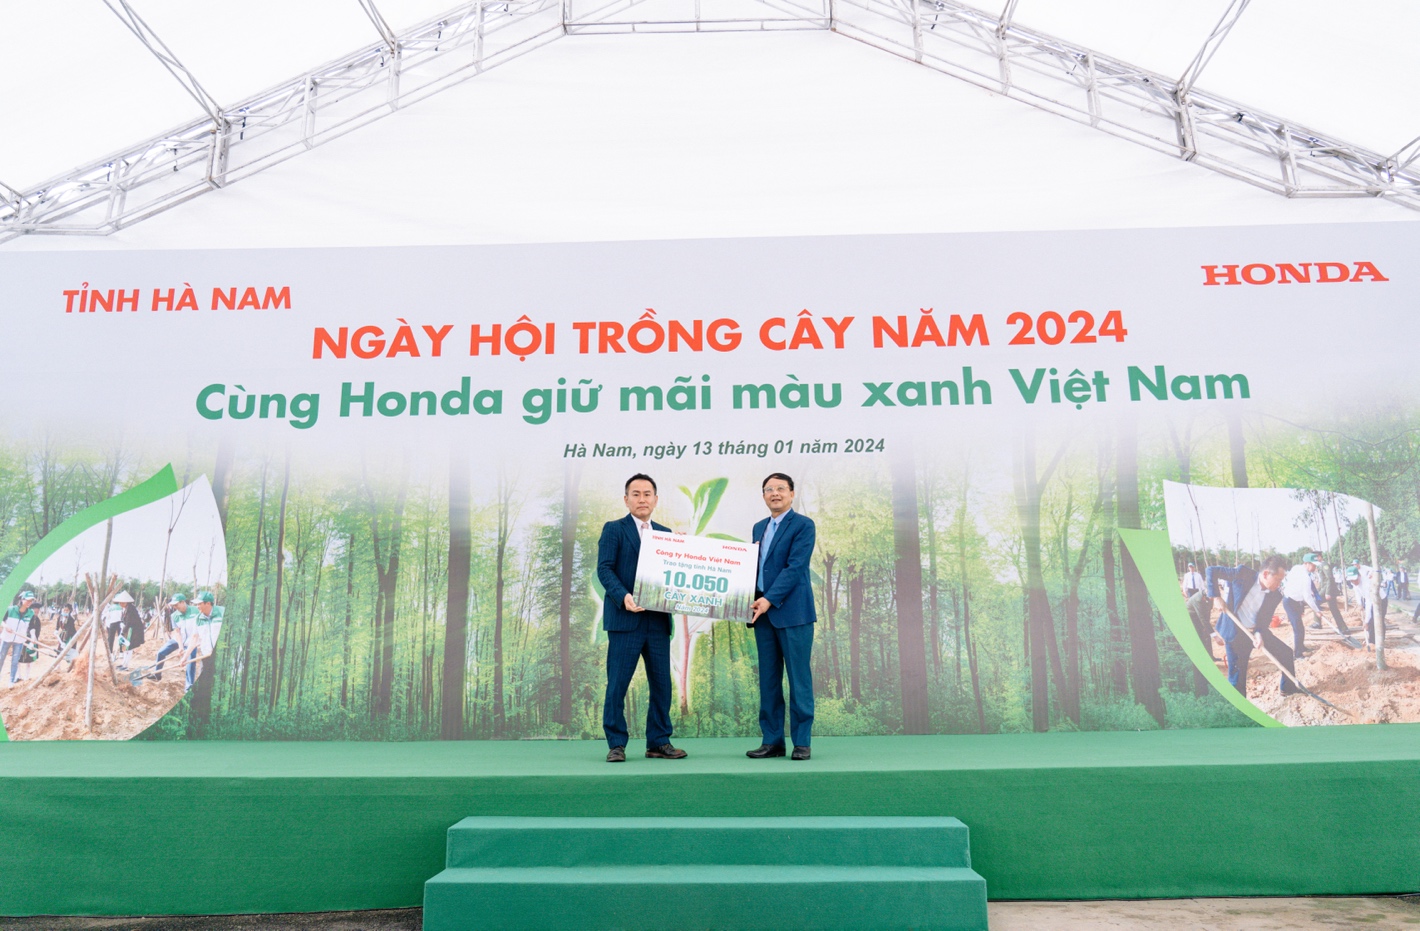 Honda Việt Nam tổ chức “Ngày hội trồng cây Honda - Vì một Việt Nam xanh” tại tỉnh Hà Nam - Ảnh 3.